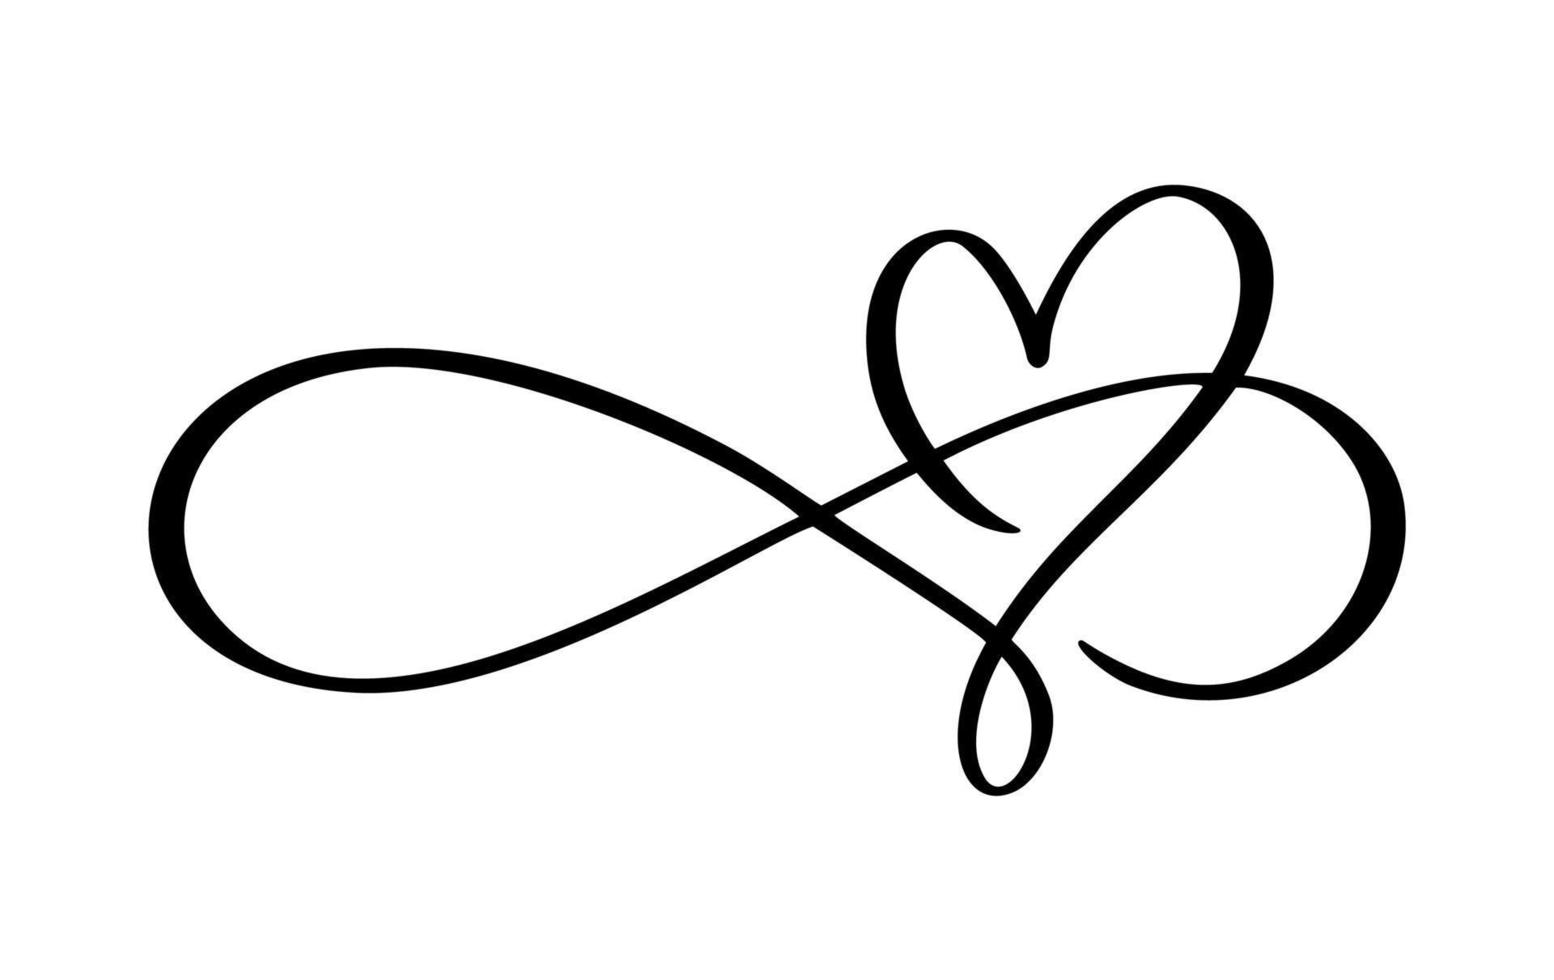 corazón de vector de caligrafía y signo para siempre el día de san valentín. logotipo de símbolo romántico de amor infinito vinculado, unión, pasión e icono de boda. plantilla para tarjeta, póster. ilustración de elemento plano de diseño